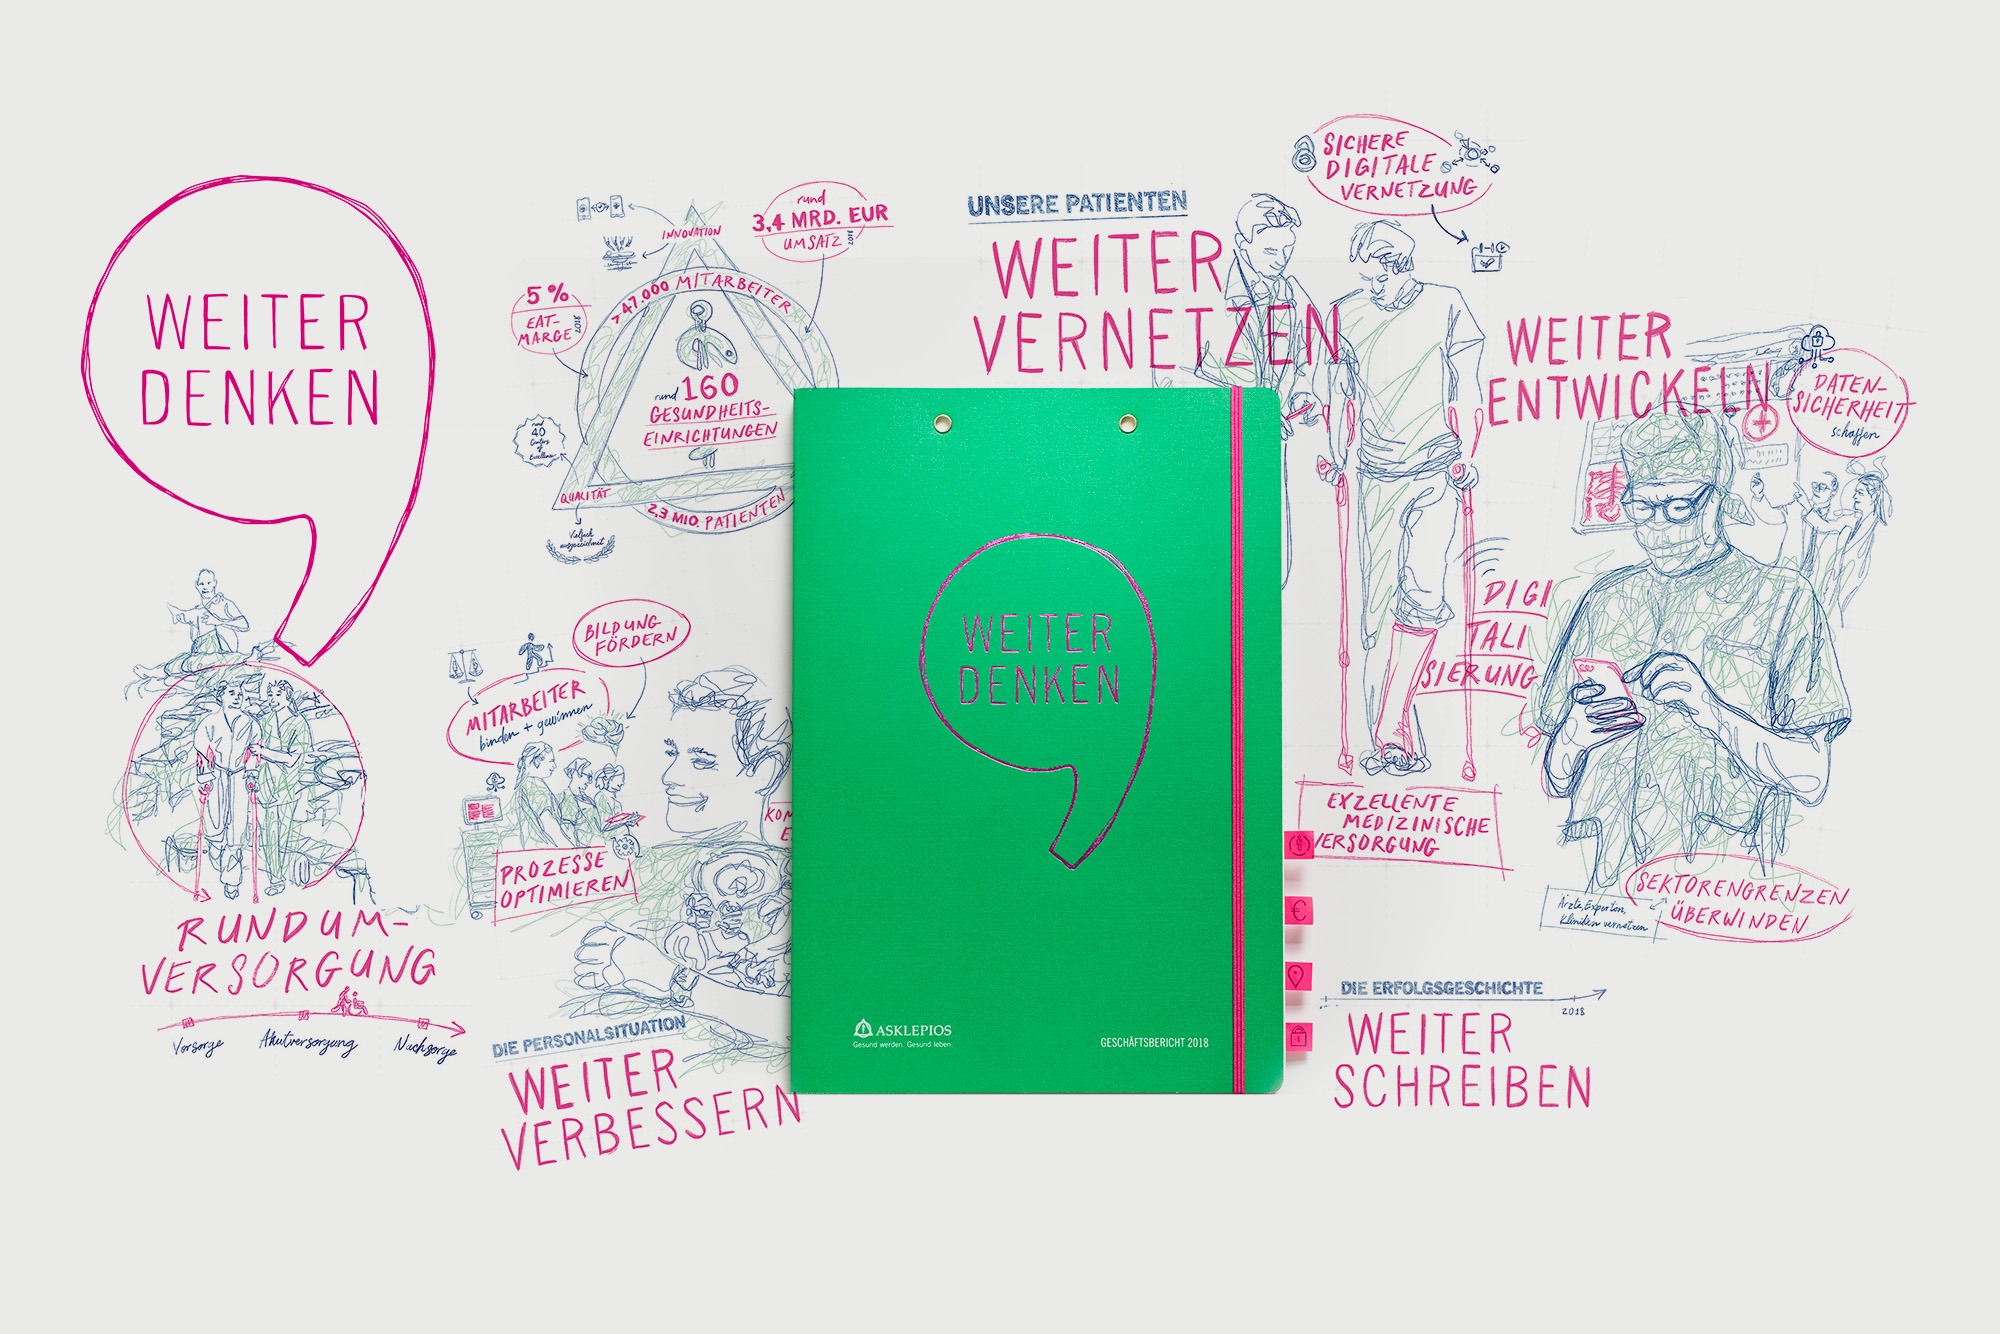 Das grüne Cover des Geschäftsberichts, dahinter Rosa, blaue und grüne Illustrationen in Skizzenoptik.